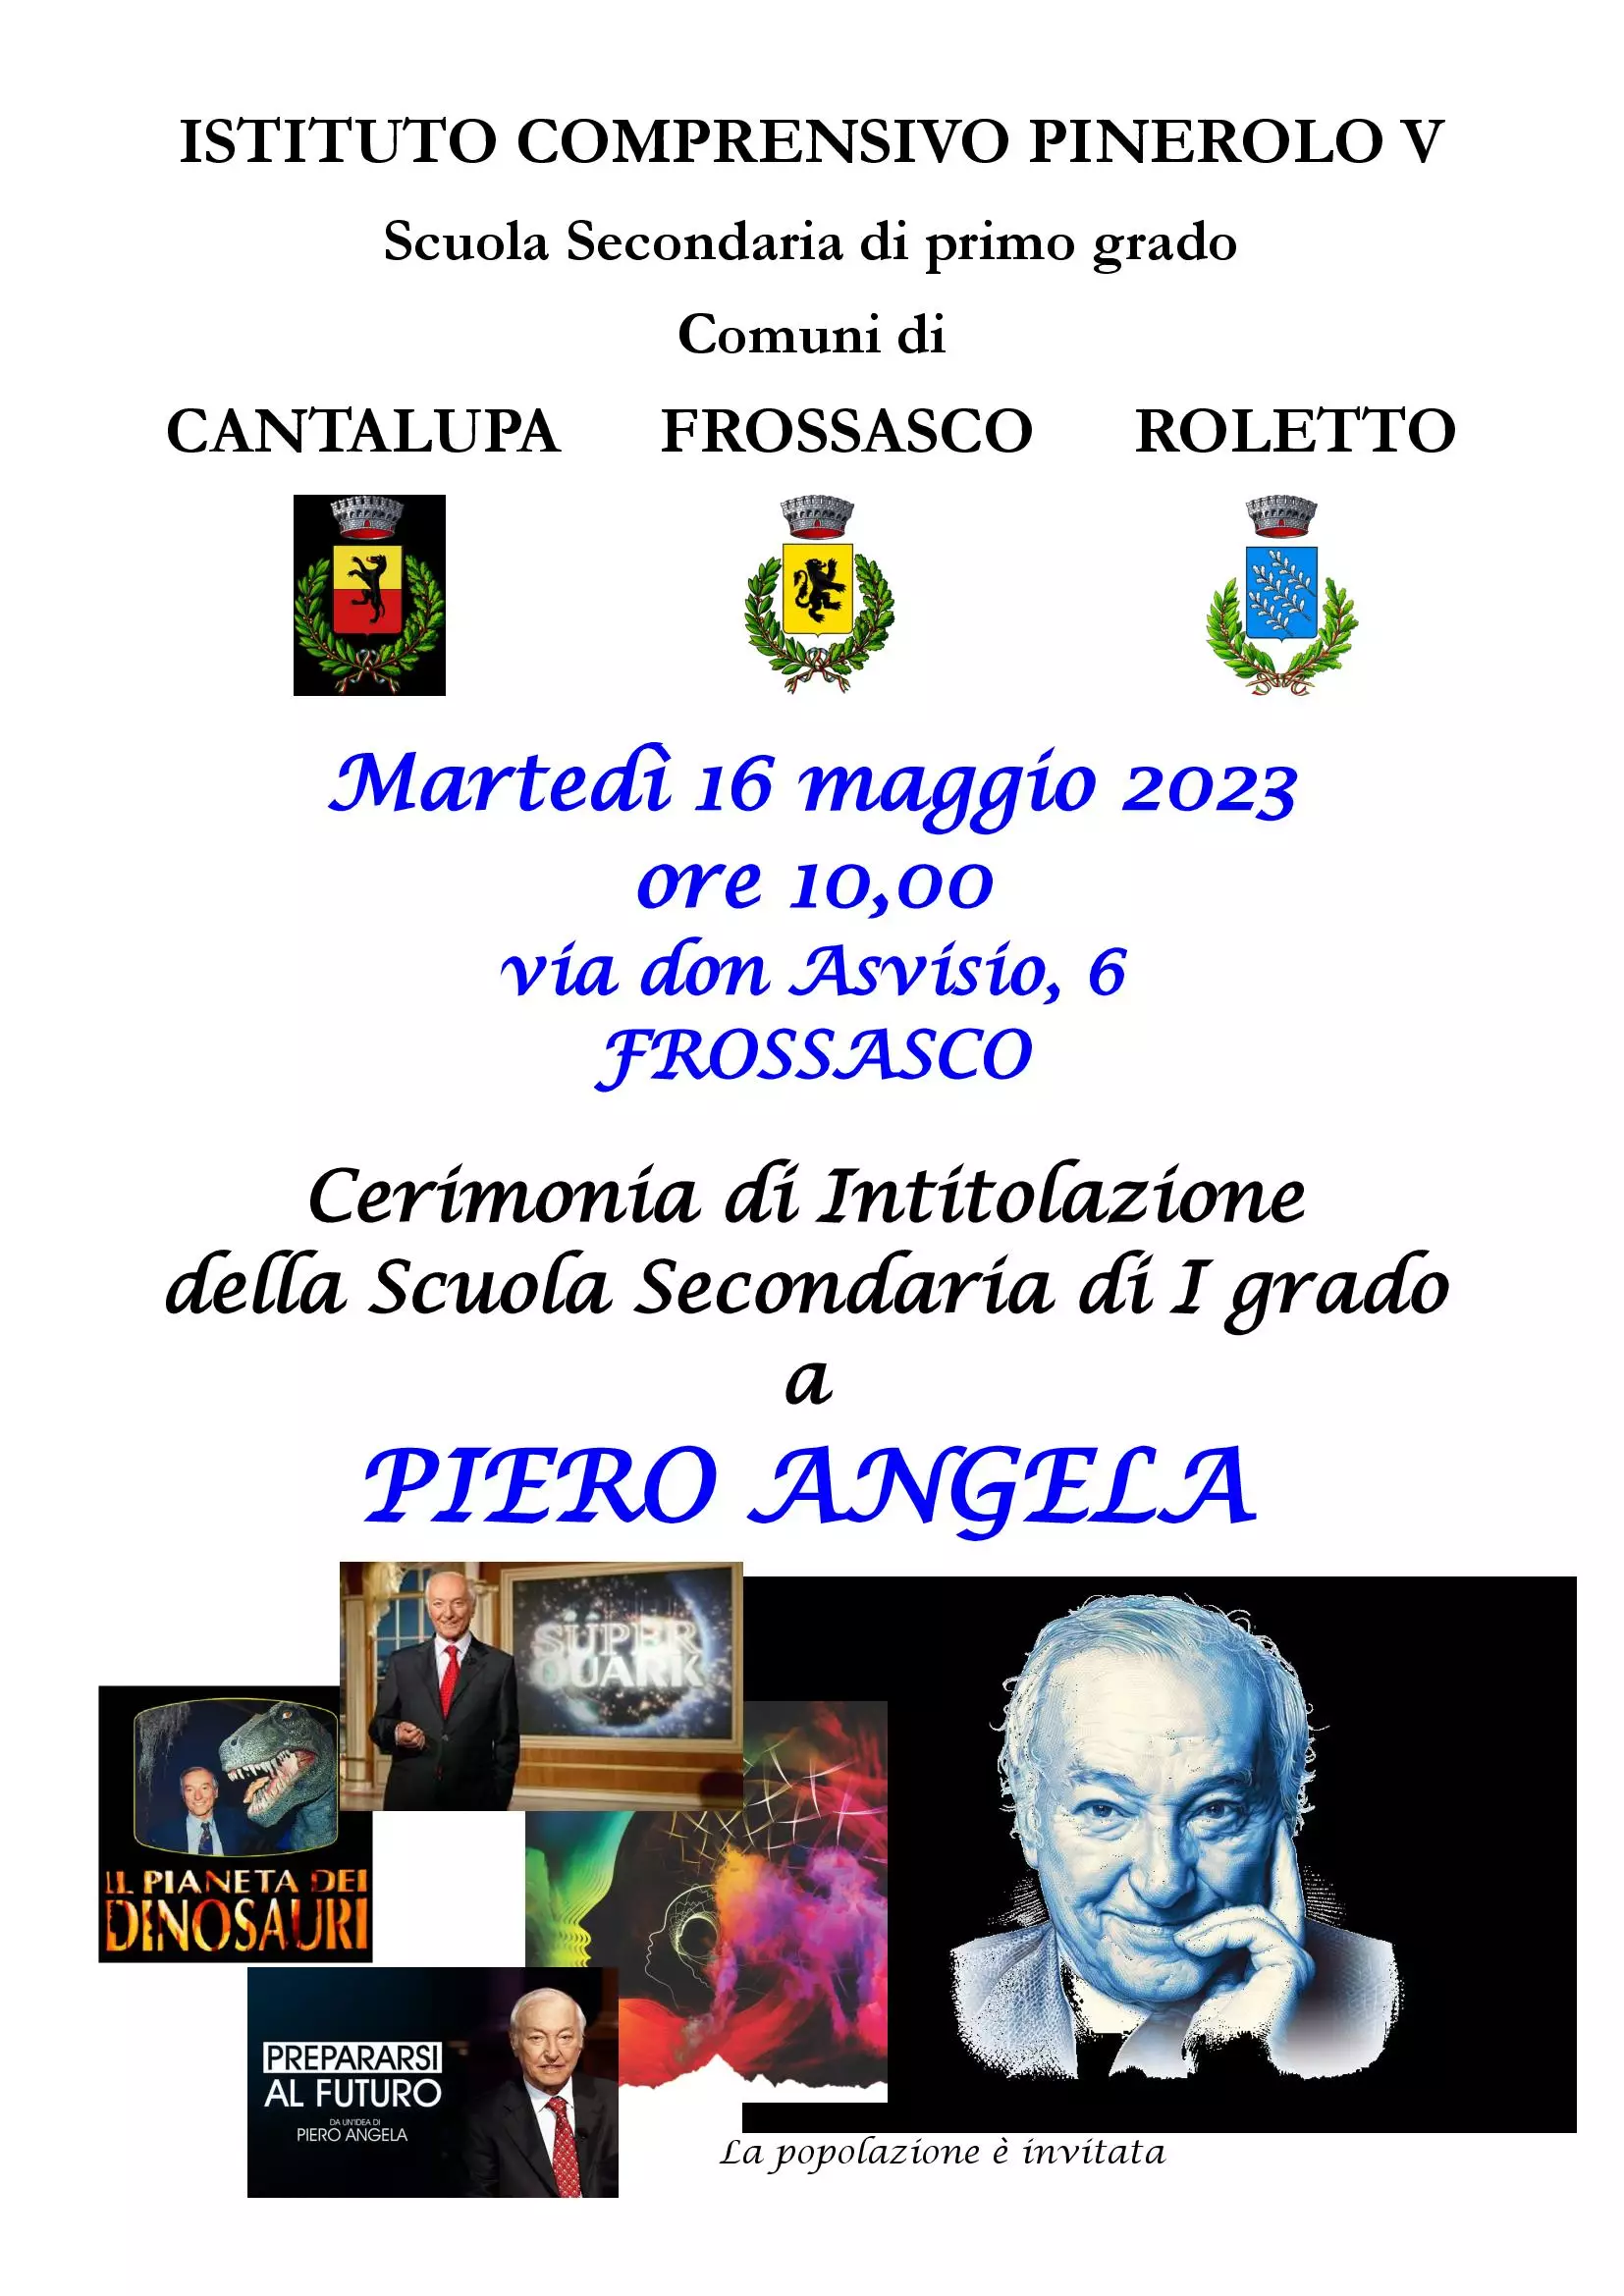 Piero Angela